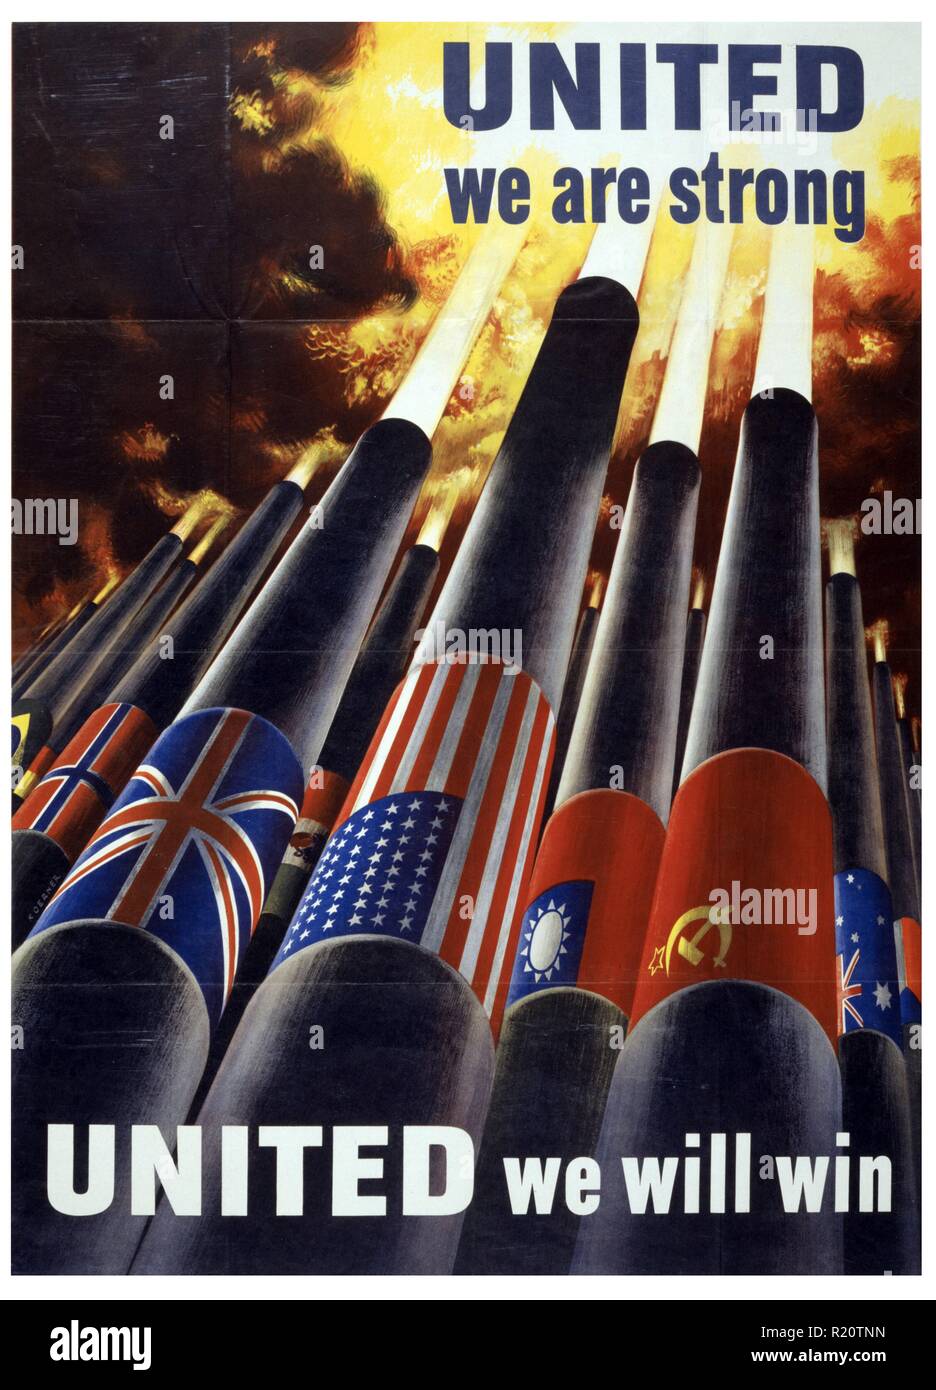 La Seconde Guerre mondiale affiche montrant des canons, chacun avec le pavillon d'une puissance alliée, le dynamitage dans le ciel. Créé par Henry Koerner (1915-1991). Datée 1943 Banque D'Images